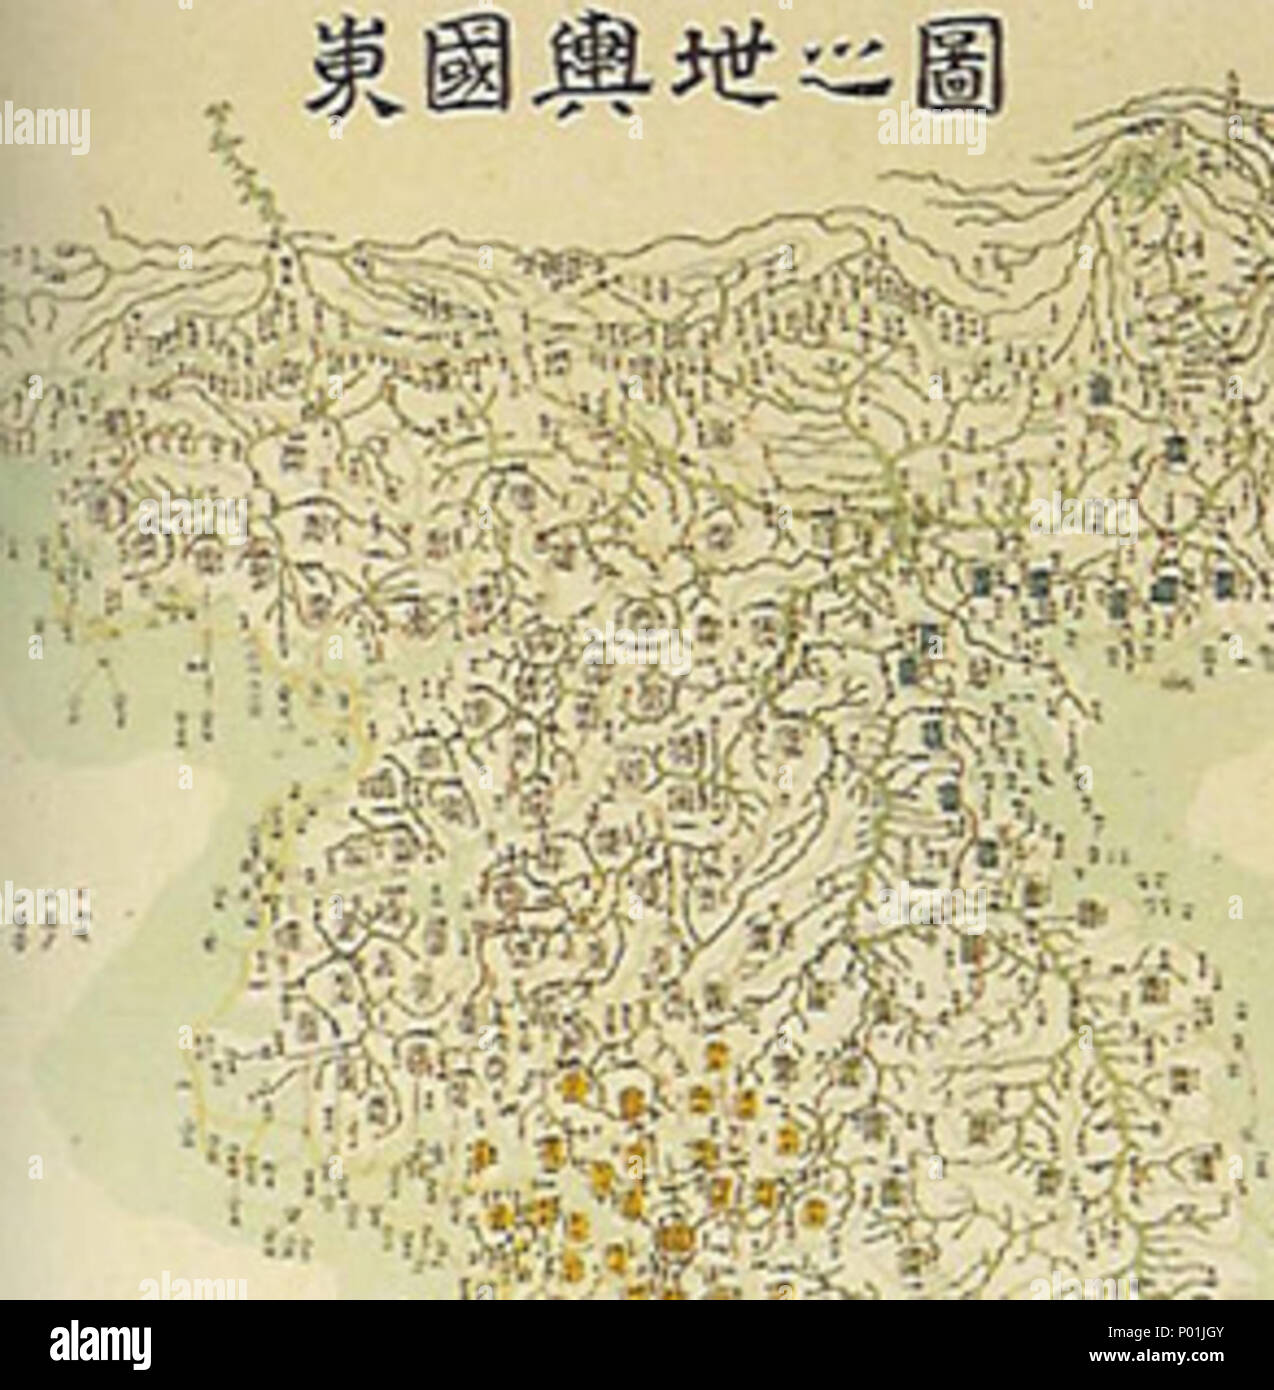 . 동국여지지도 (114.8×65.2㎝, 1710년경), 화가로 유명한 공재 윤두서(16681725)가 그린 조선전도  . circa 1710.   Yun Du-seo  (1668–1715)     Alternative names Yun Tu-s?; Hyo ?n (cha); Kongjae (ho); Chong'ae (ho); Yun Tu-so  Description Korean painter  Date of birth/death 1668 1715  Authority control  : Q8061186 VIAF:?96590919 ISNI:?0000 0000 8458 025X ULAN:?500123221 LCCN:?n85078014 GND:?141764333 WorldCat 13 Korea-map-Dongguk yeoji jido-by Yun Duseo Stock Photo